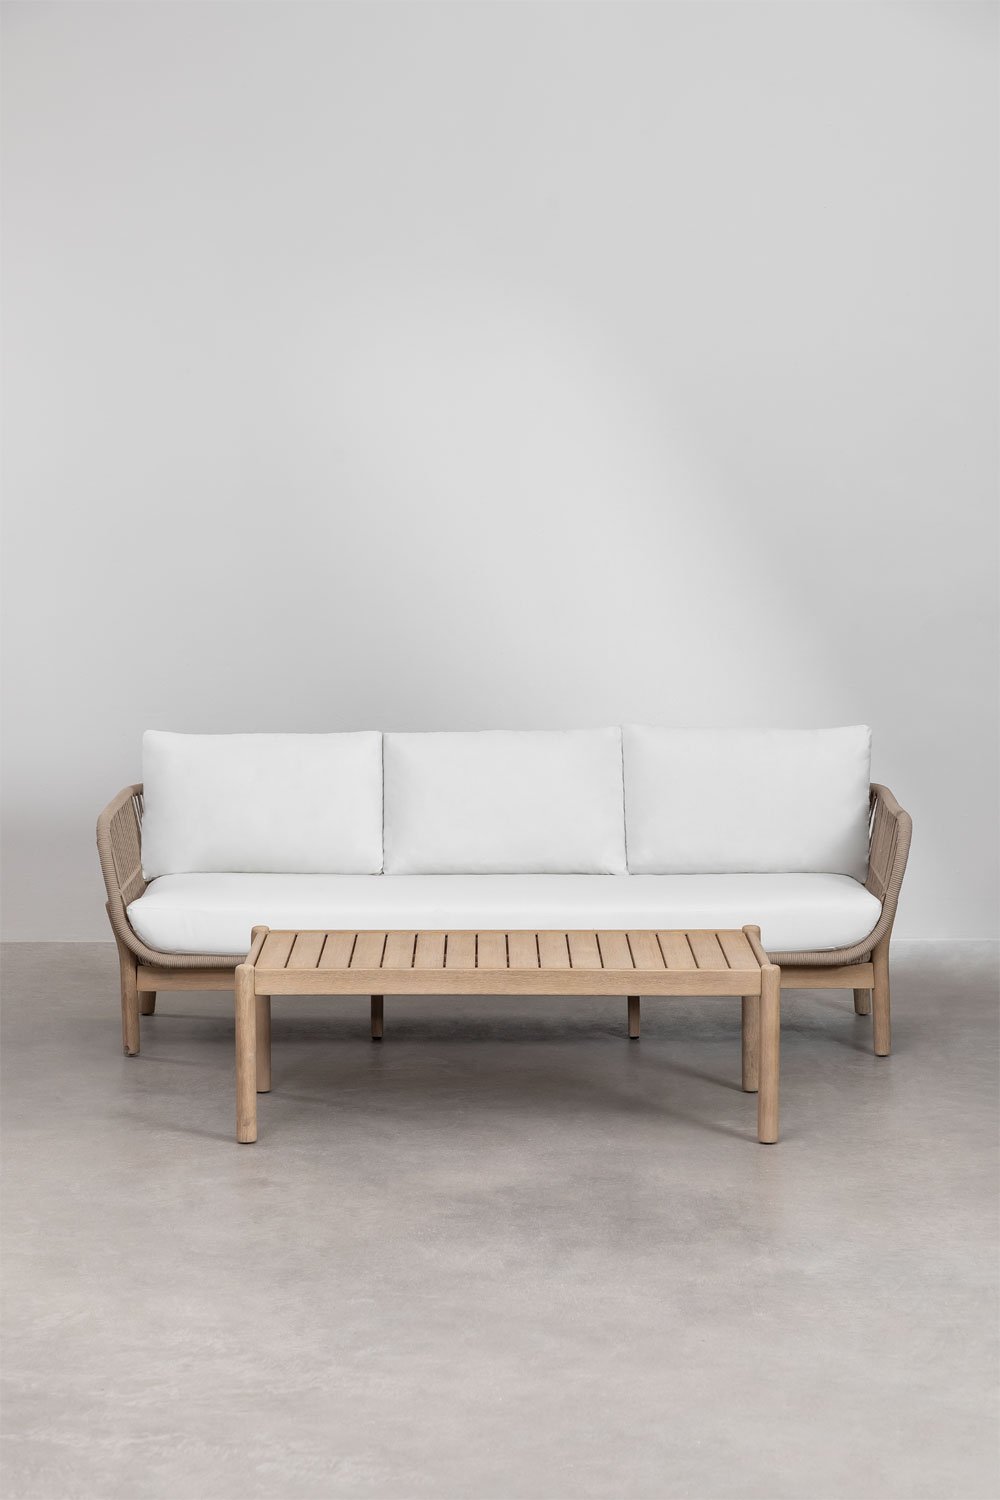 Salon de jardin 3 places et table basse rectangulaire en aluminium et bois d'acacia (120x60 cm) Karvia, image de la galerie 1